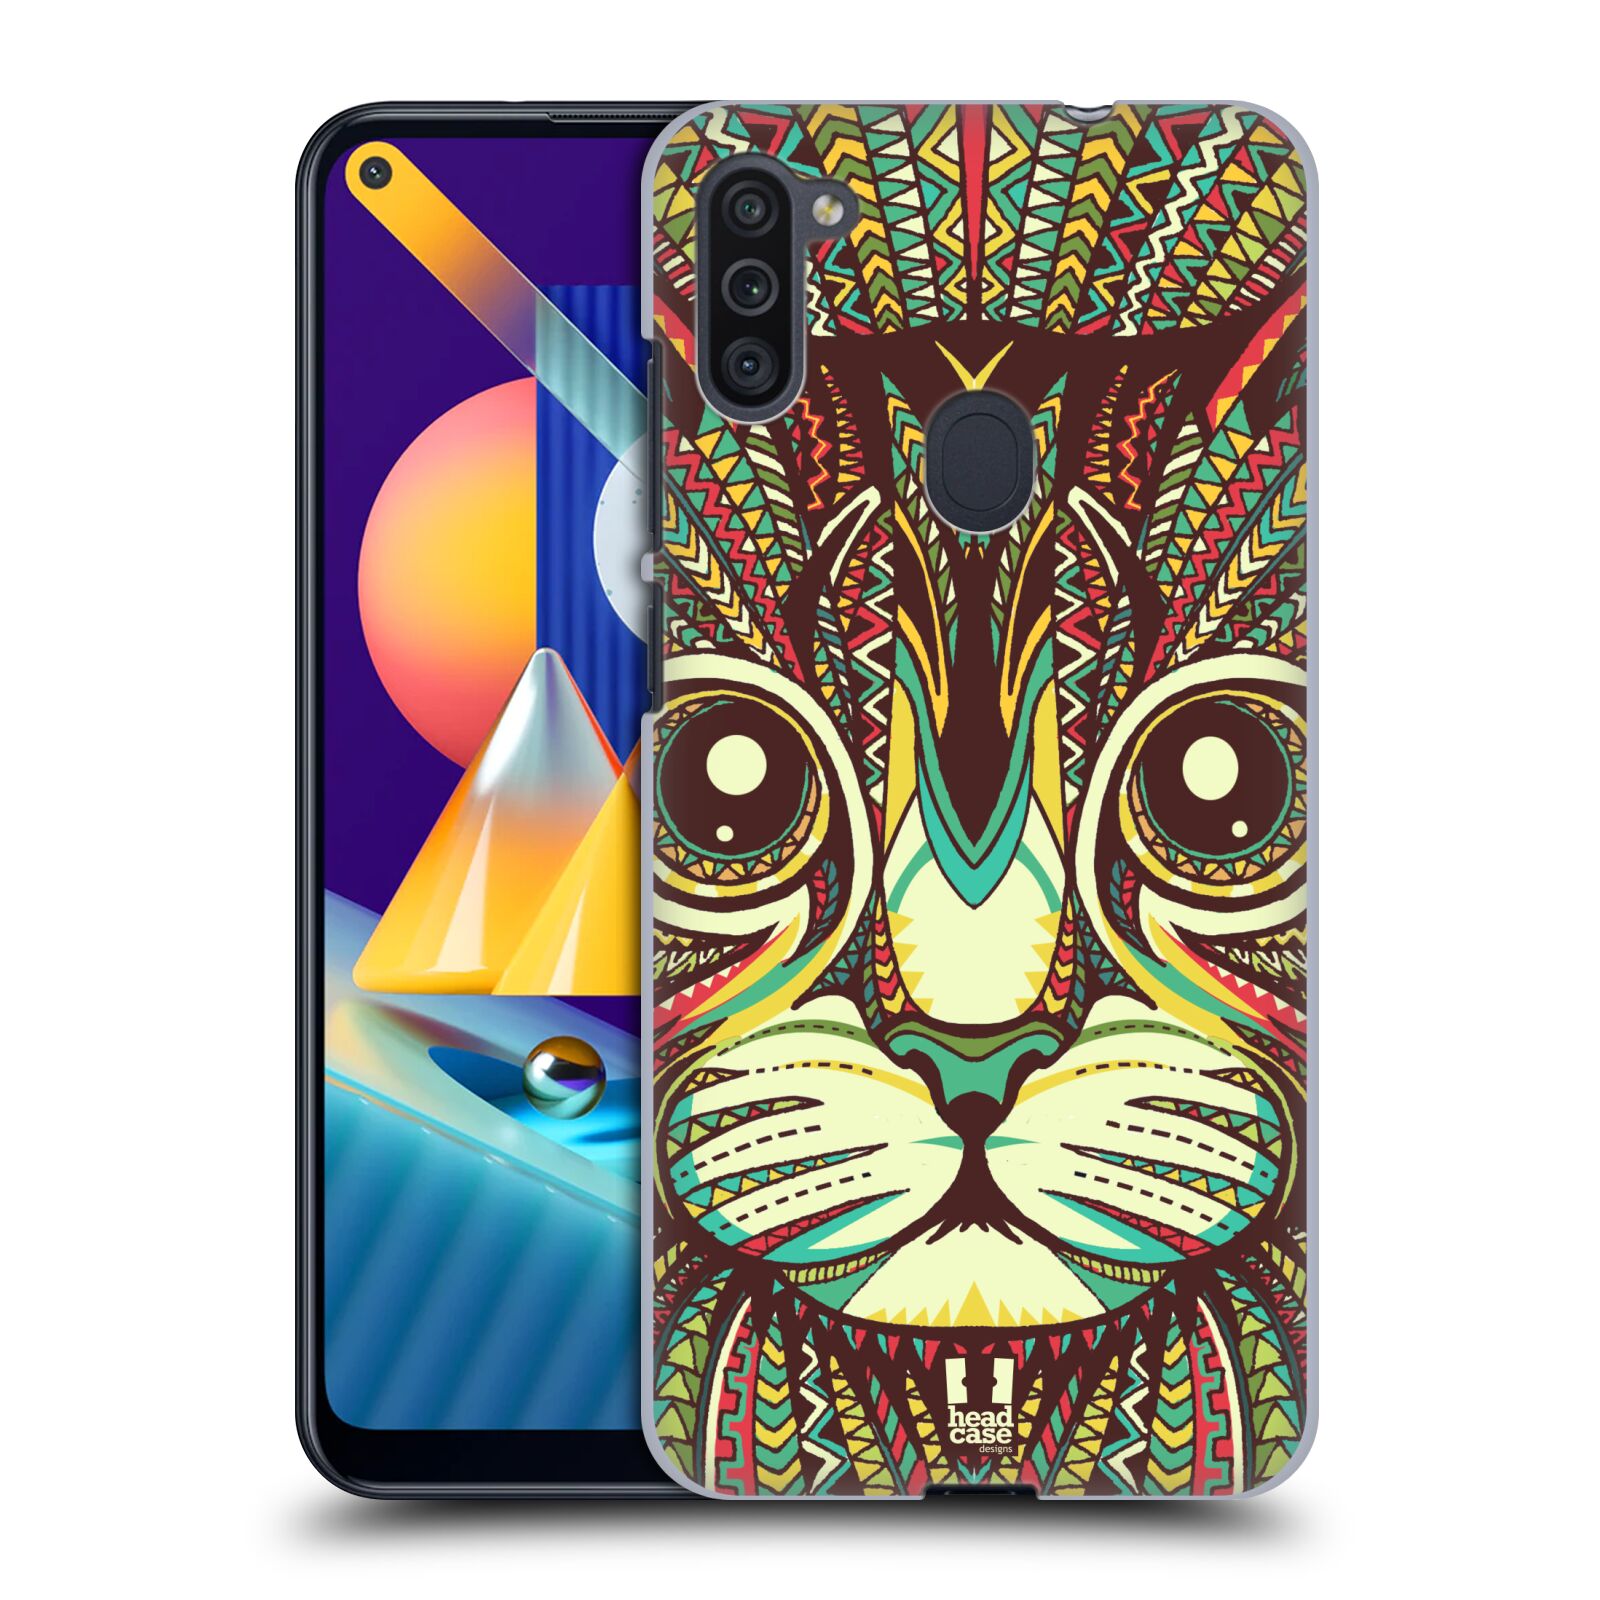 Plastový obal HEAD CASE na mobil Samsung Galaxy M11 vzor Aztécký motiv zvíře 2 kotě